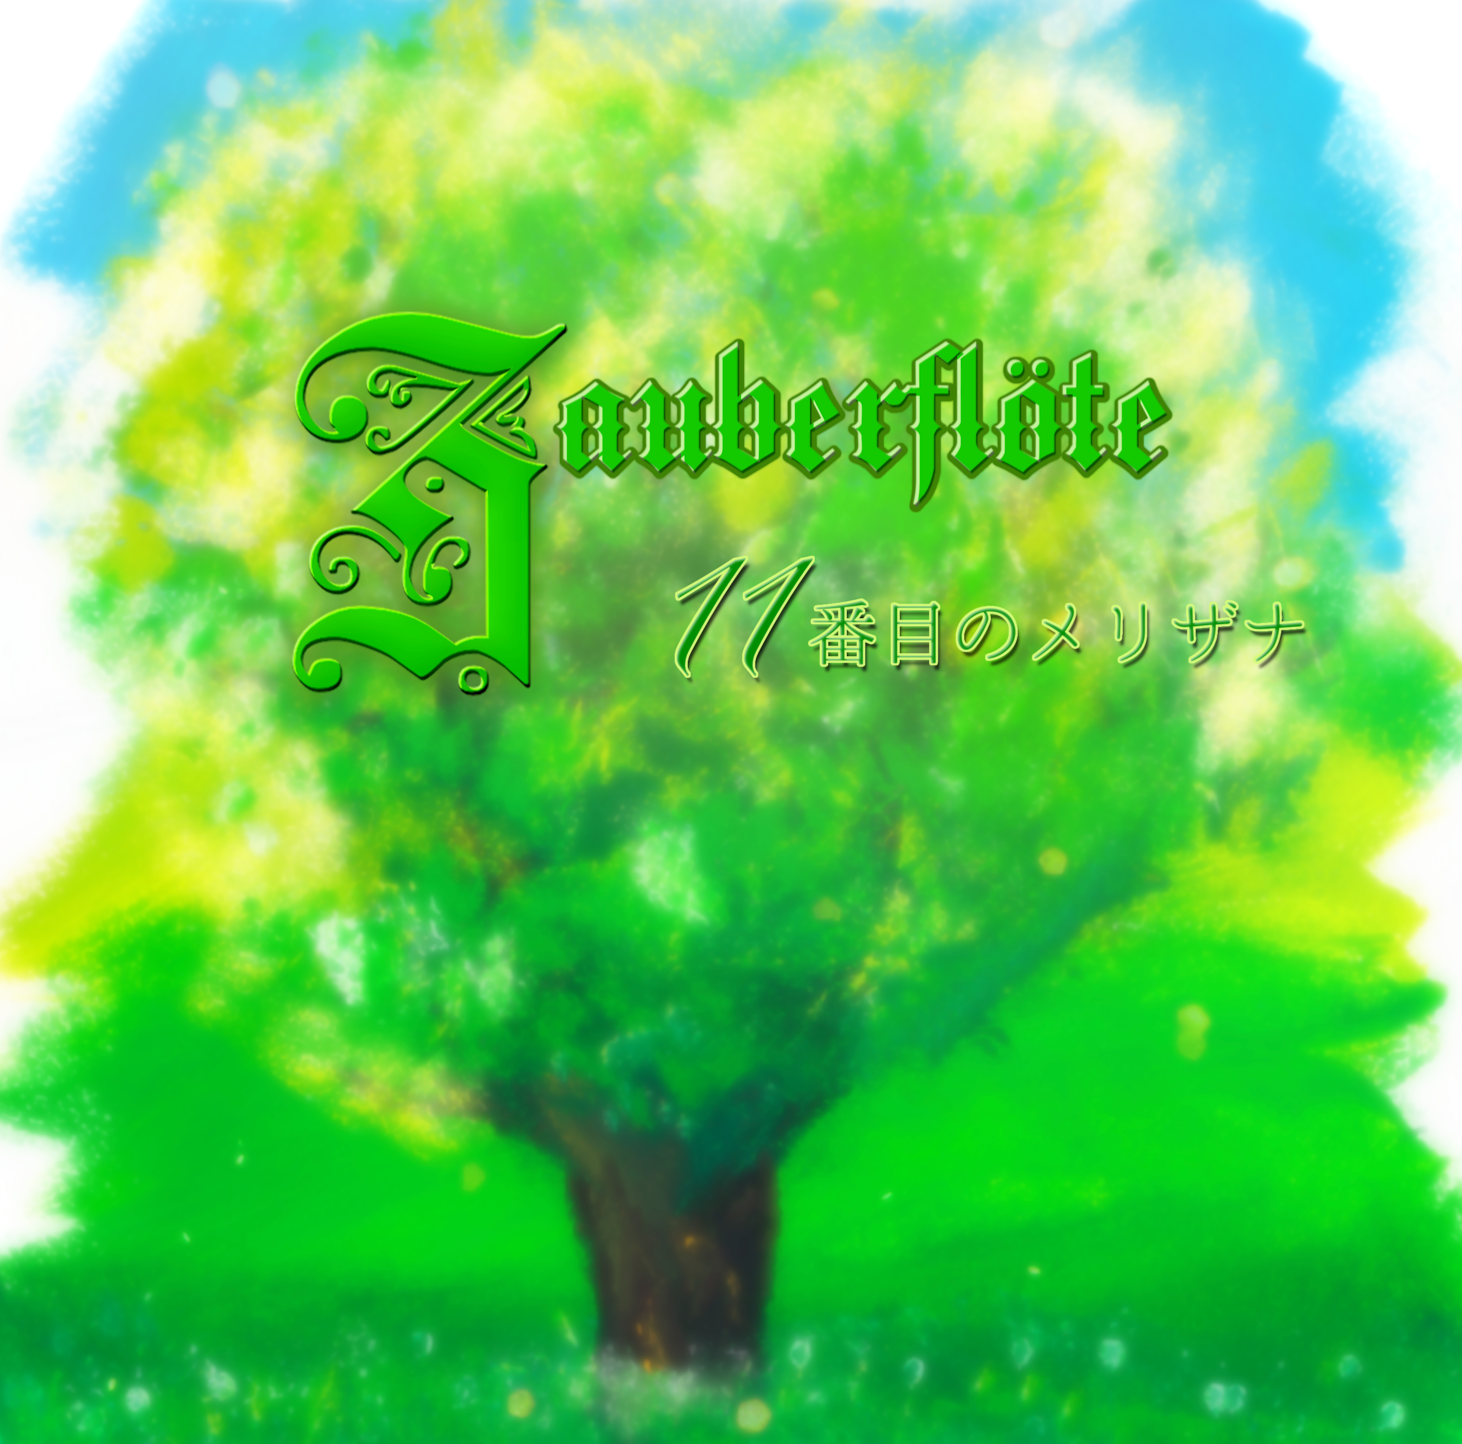 11番目のメリザナ 1st Instrumental Album 『Zauberflöte』 ジャケット